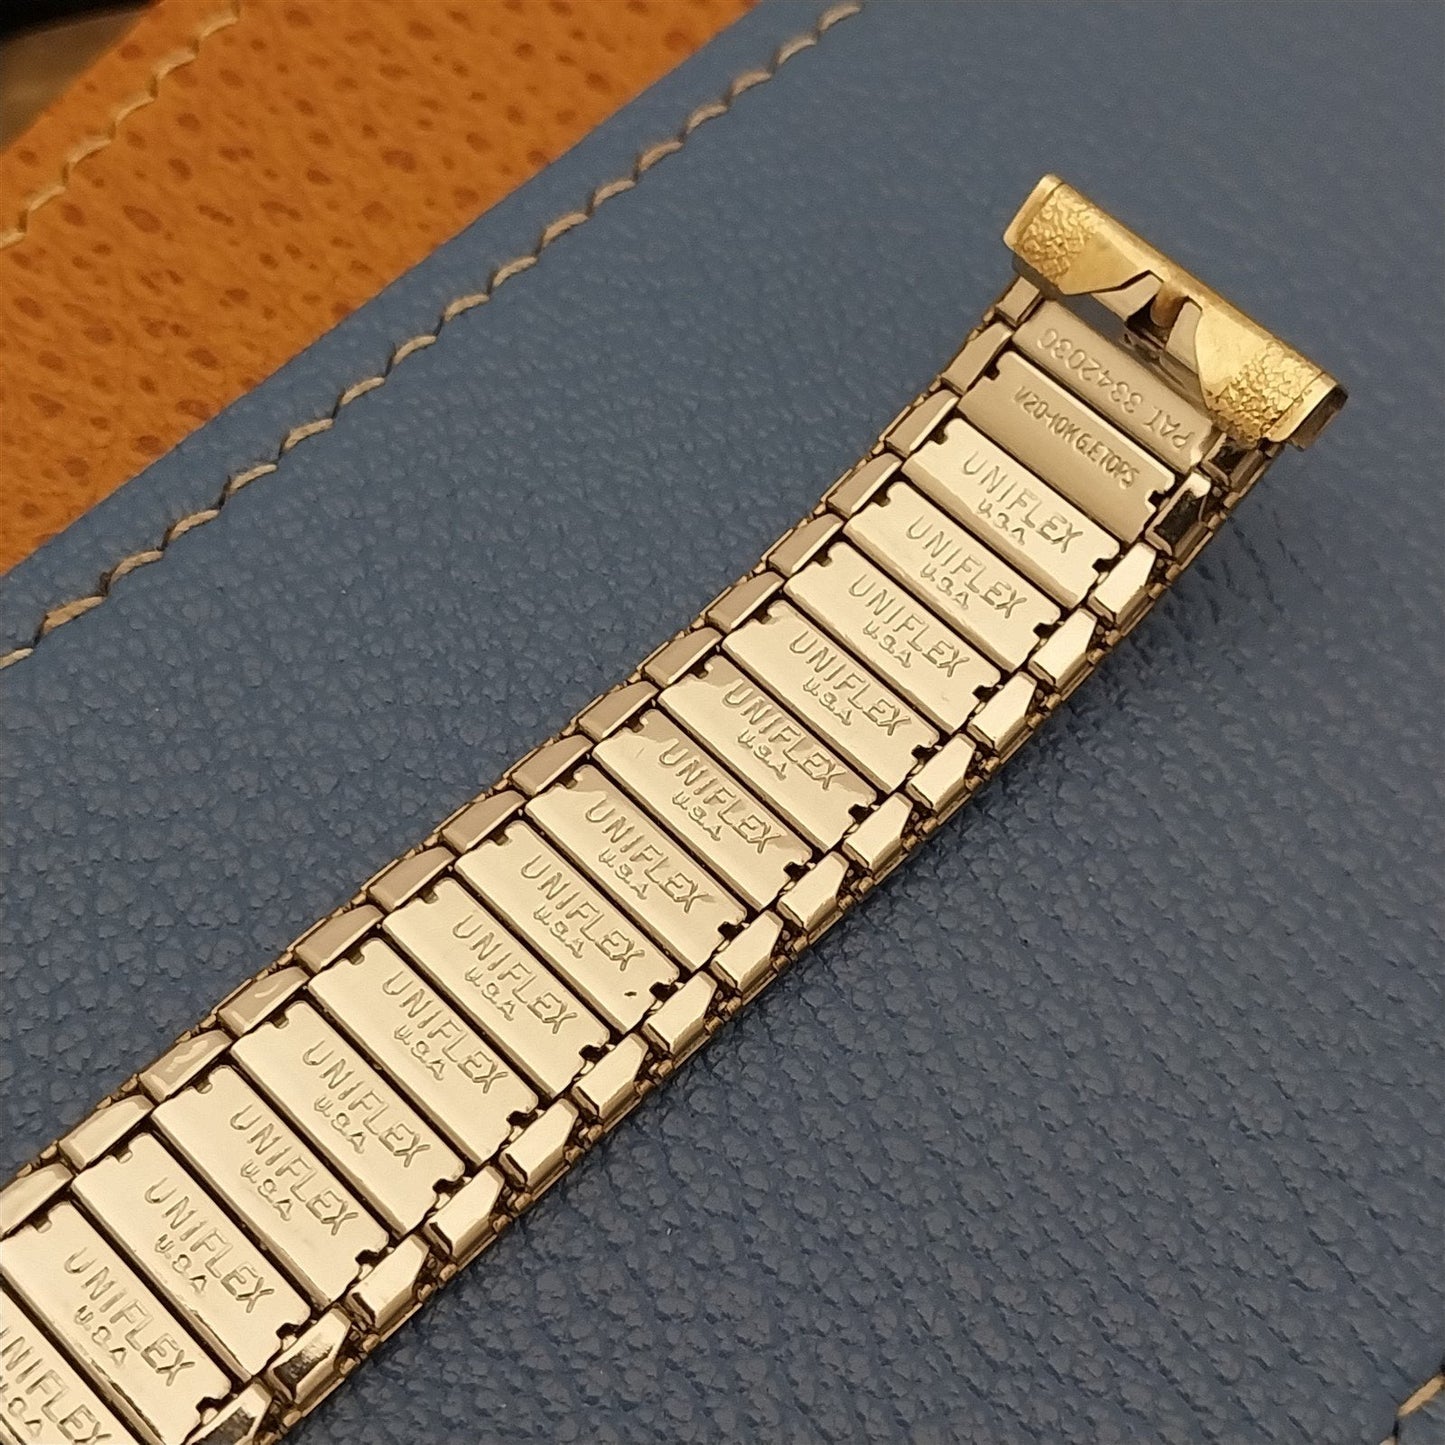 17.2mm 10k Gold-Filled Uniflex Slim Expansion Unused 1960s Vintage Watch Band